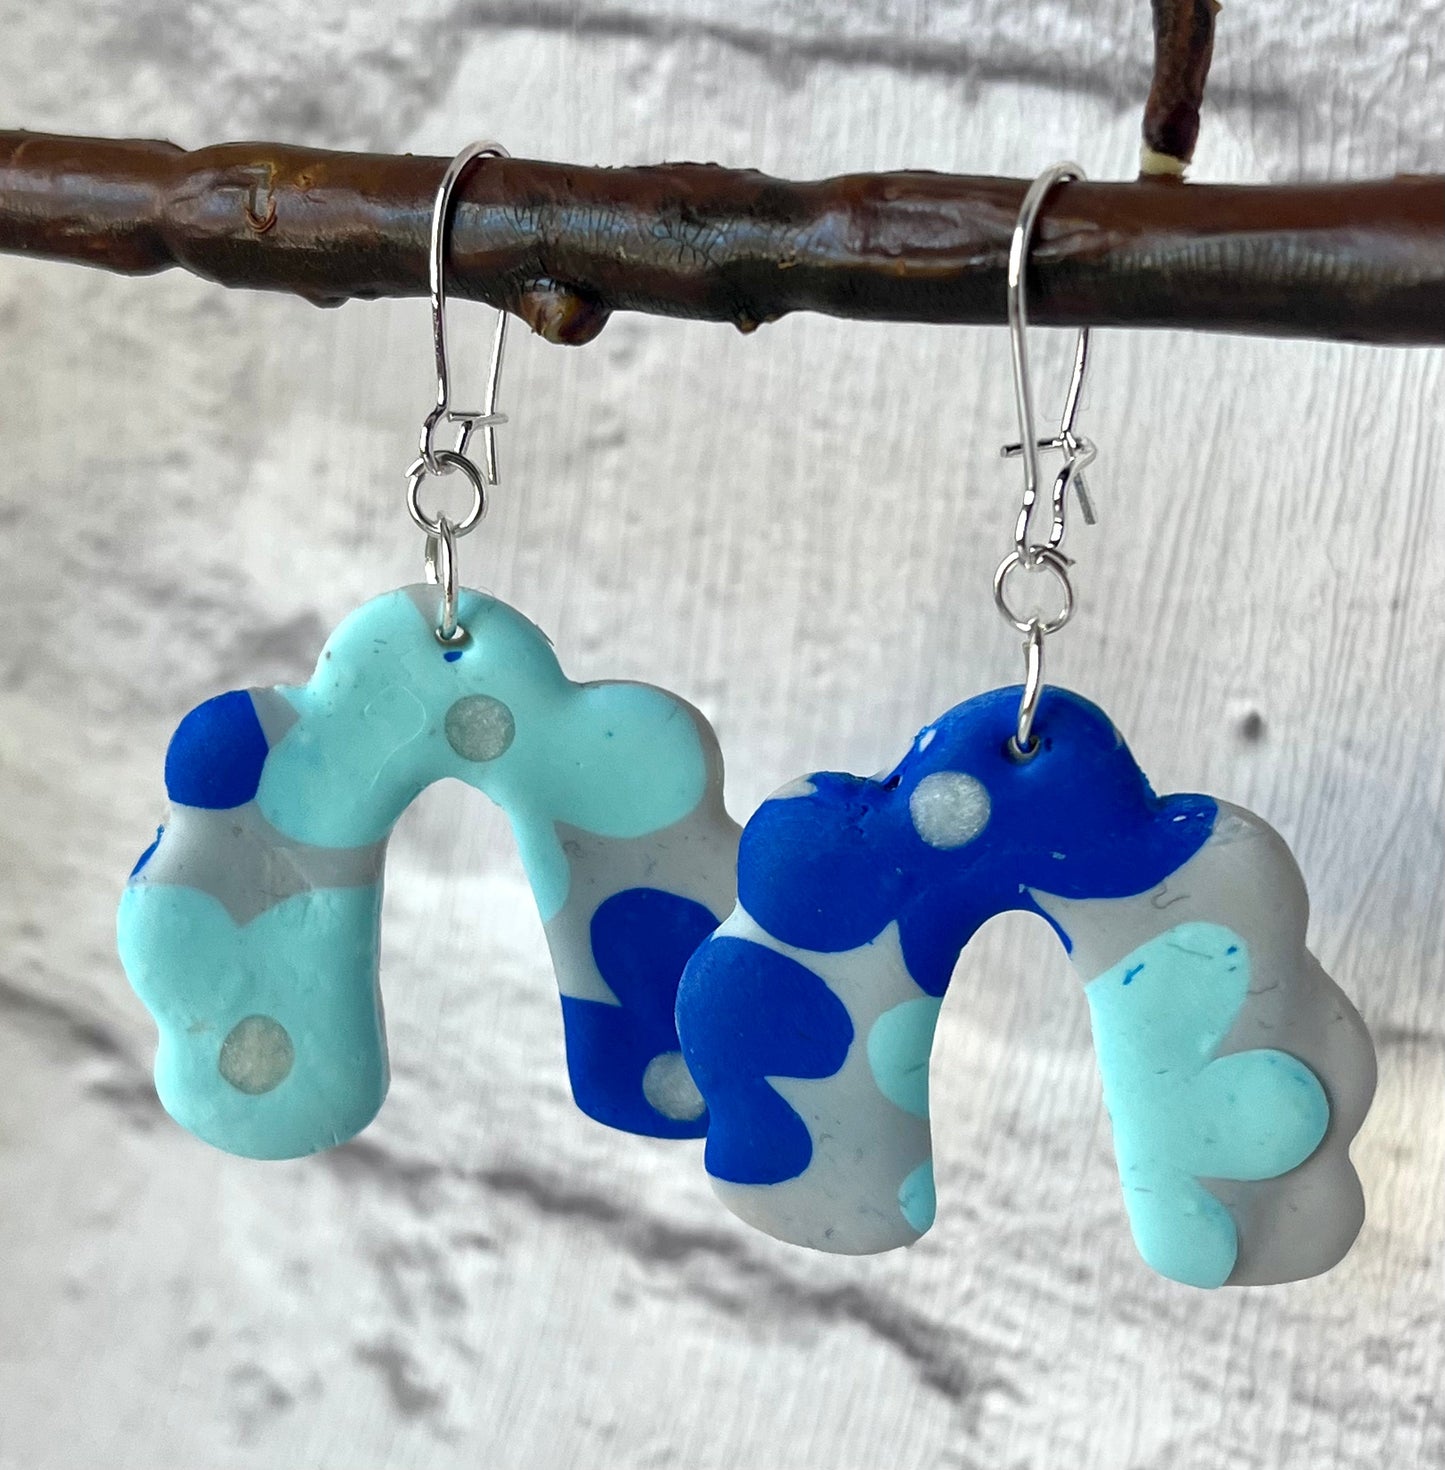 Handmade Blue Flower Pattern Polymer Clay Earrings